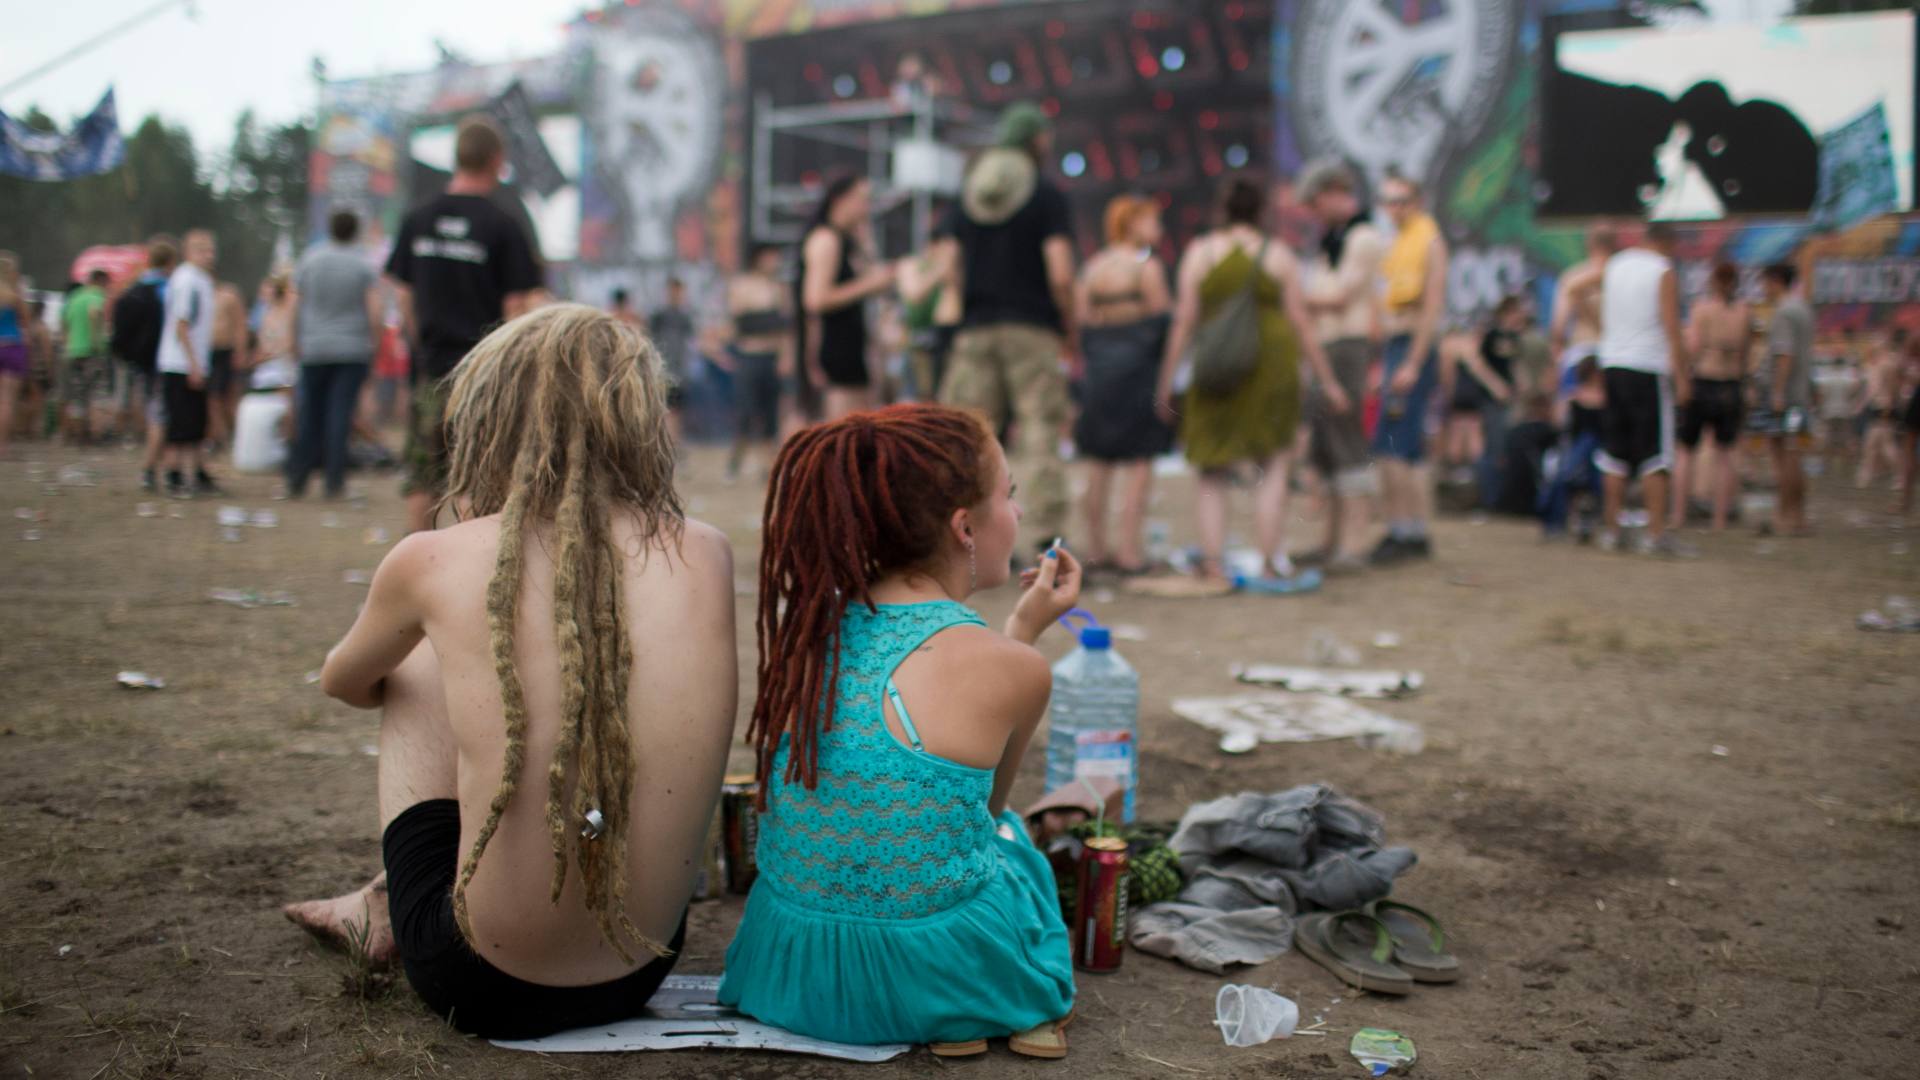 El mítico festival de Woodstock, suspendido en su 50º aniversario